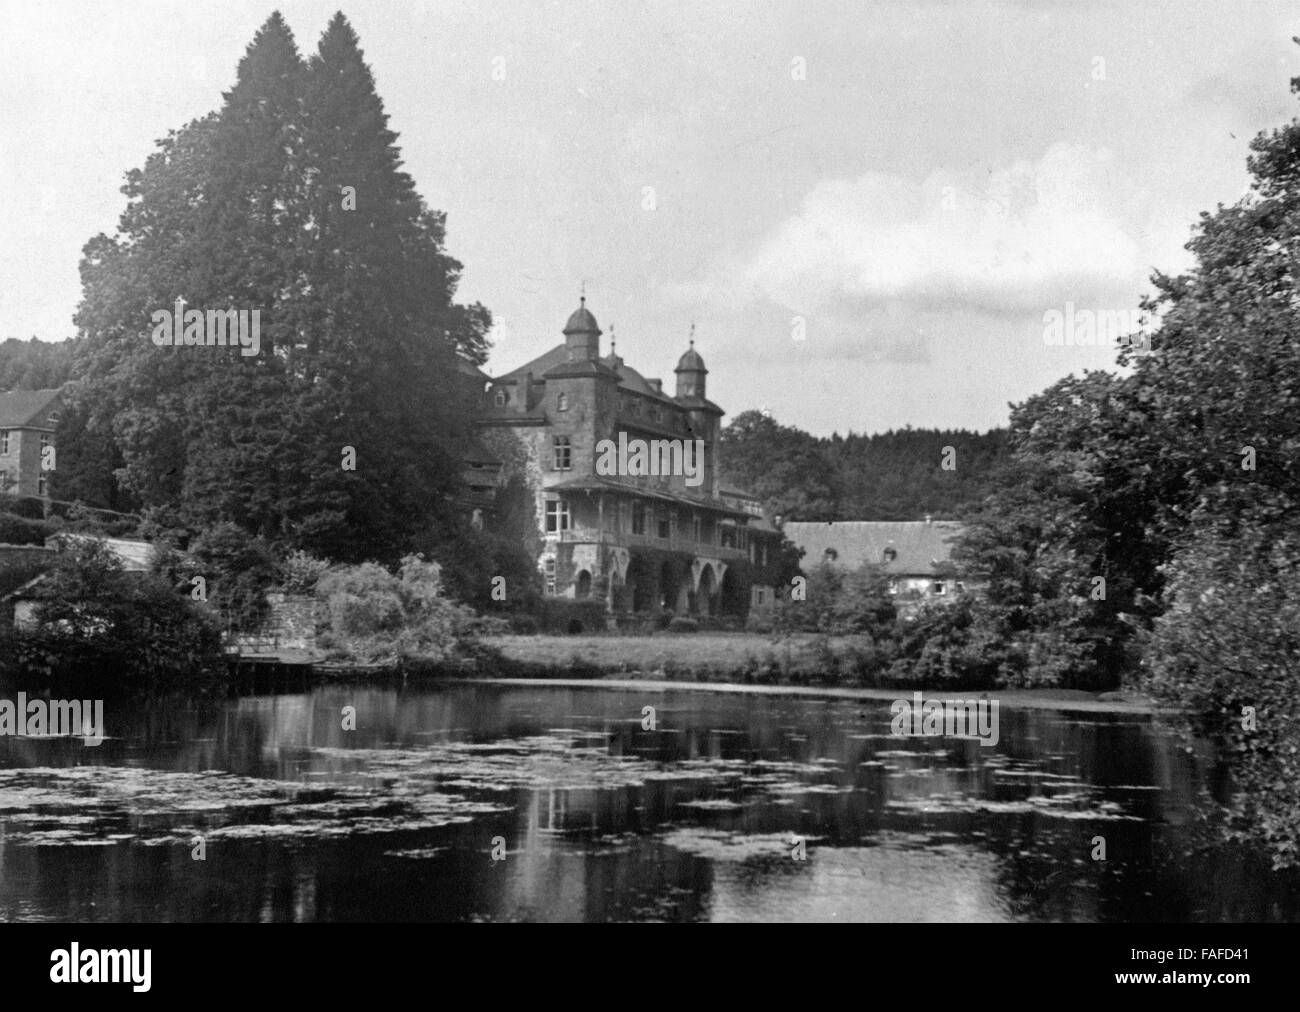 Schloß Gimborn bei Marienheide Bergischen im Land, Deutschland 1930er Jahre. Schloss Gimborn castello vicino Marienheide in Bergisches Land regione, Germania 1930s. Foto Stock